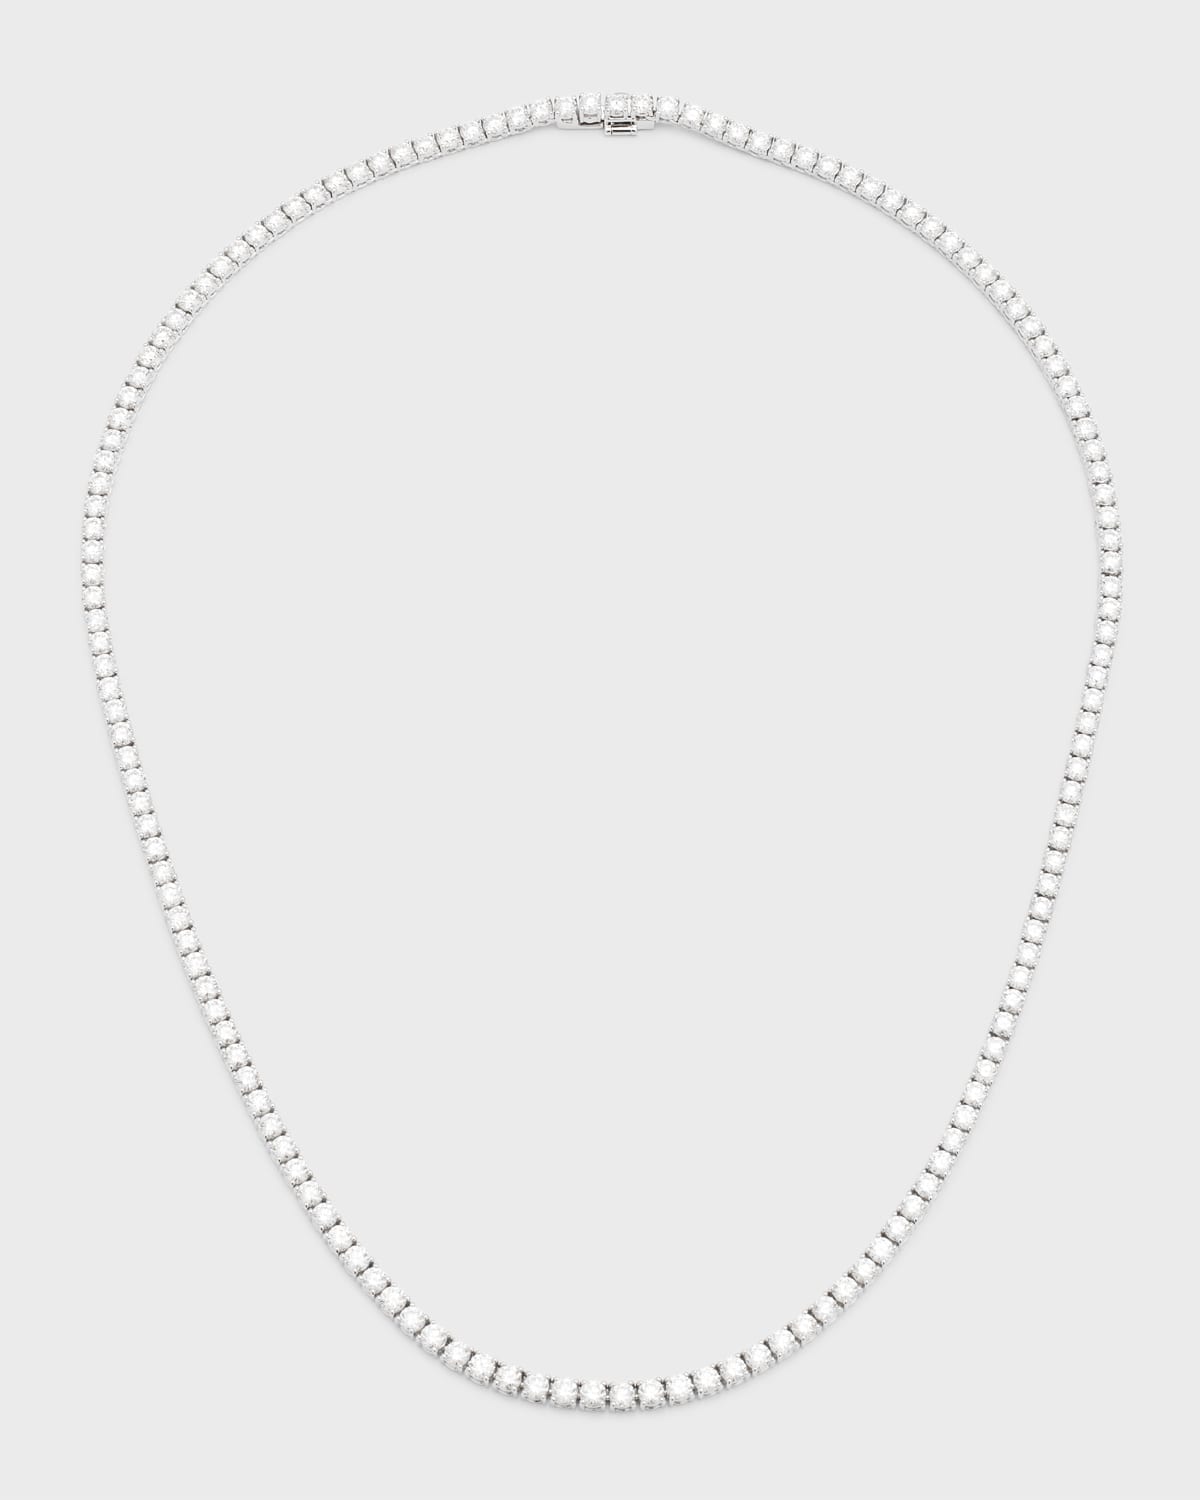 Neiman Marcus Diamonds 18k White Gold Round Diamond Tennis Necklace, 10.95tcw